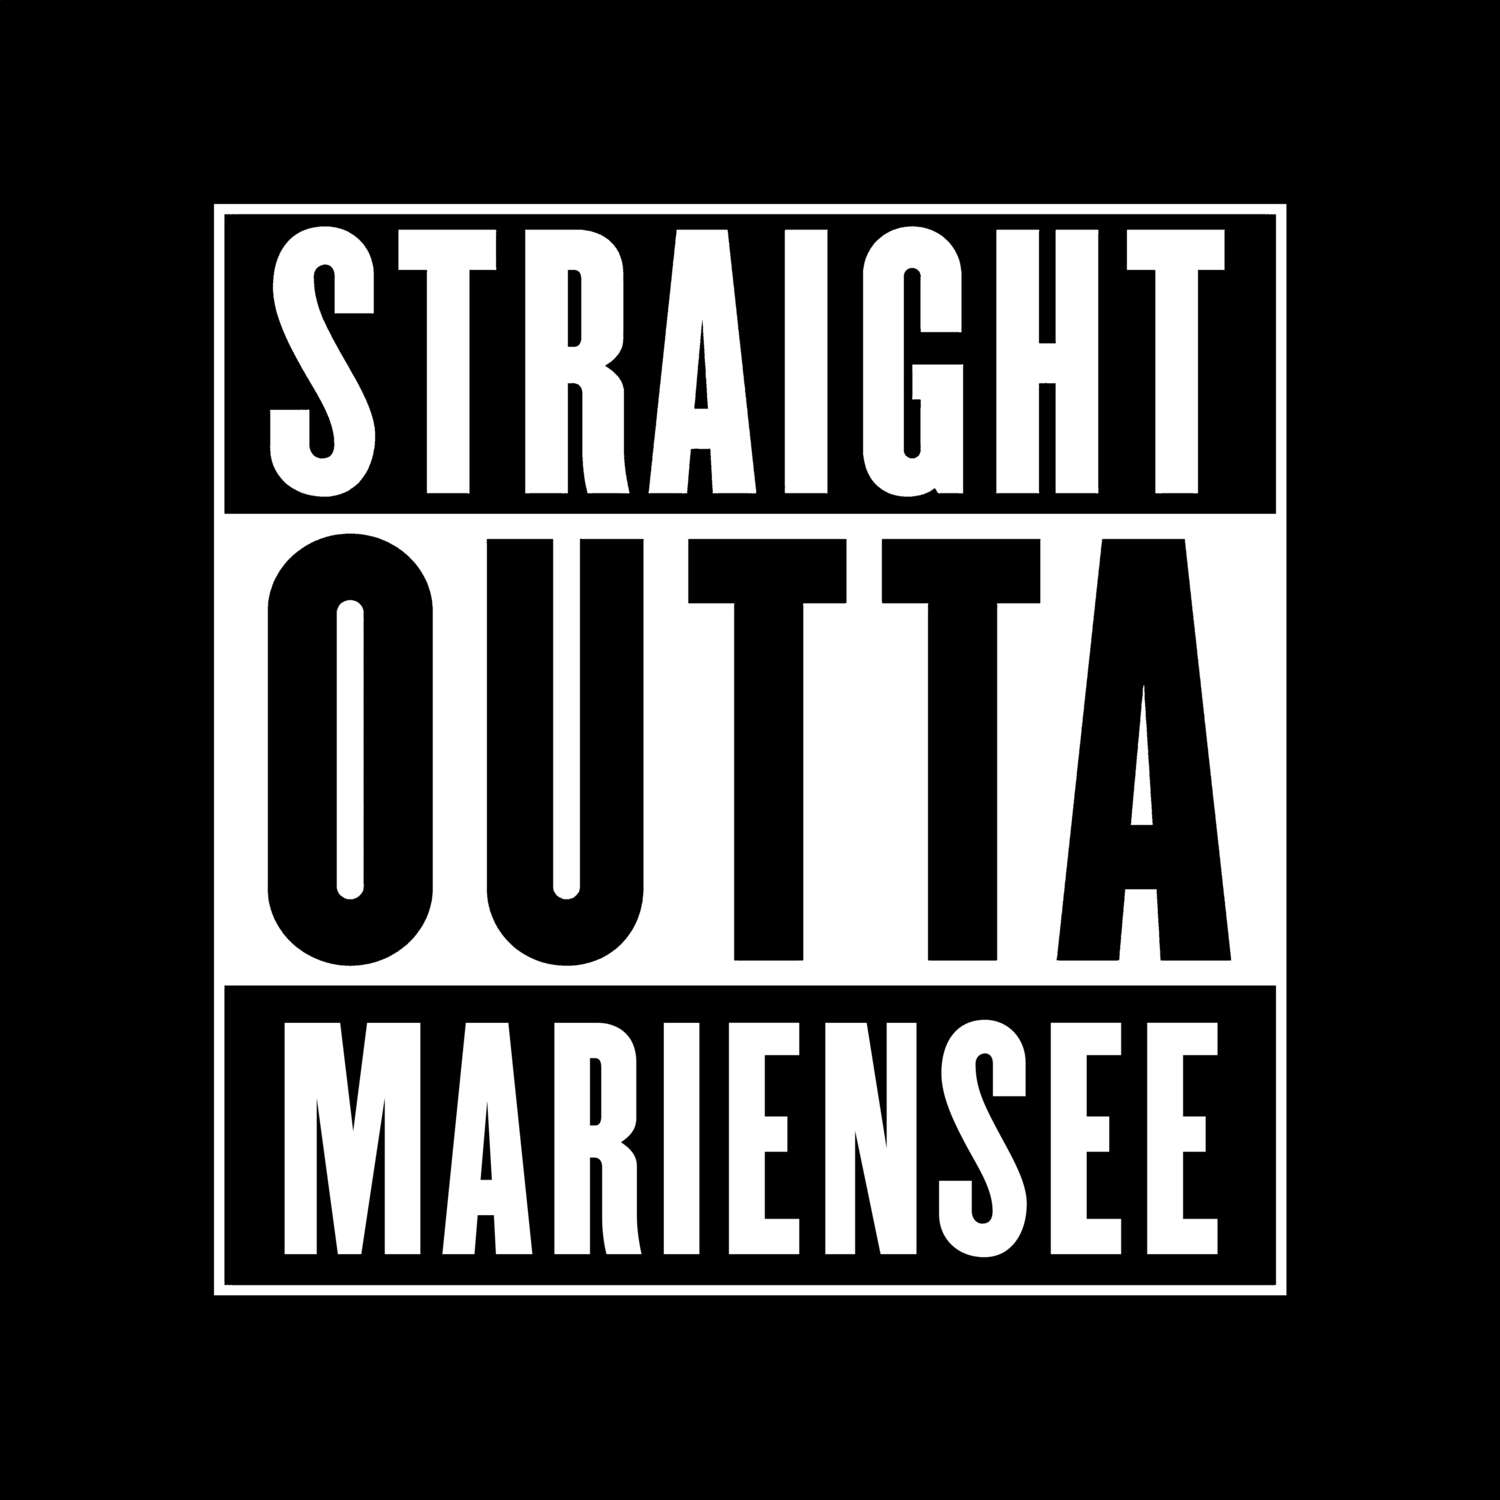 Mariensee T-Shirt »Straight Outta«